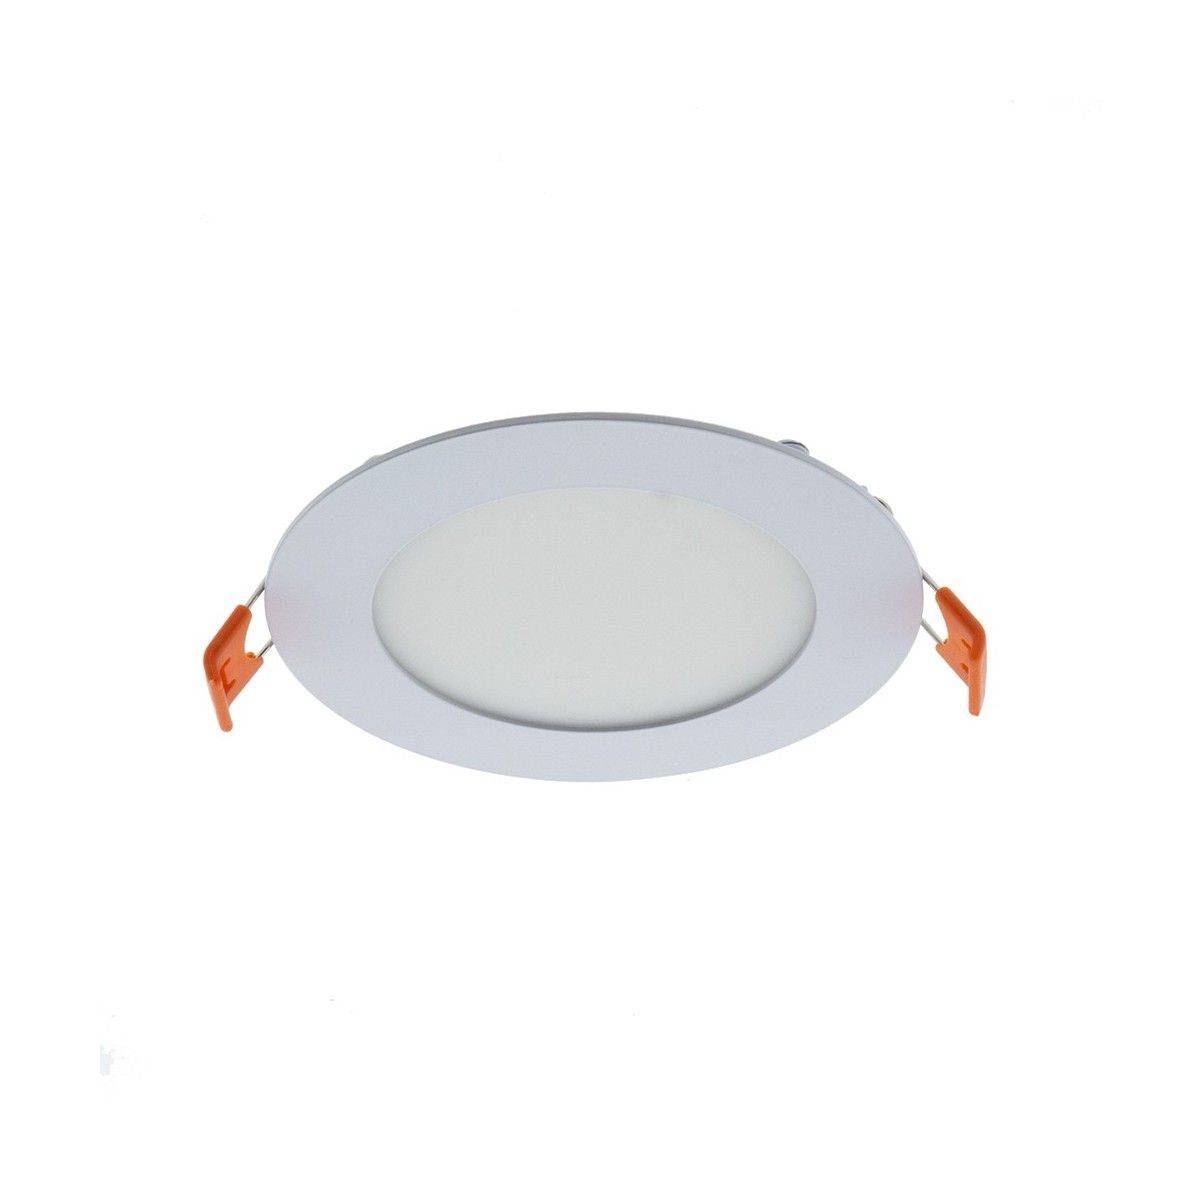 Downlight LED circular empotrable 6W - 5 años de garantía